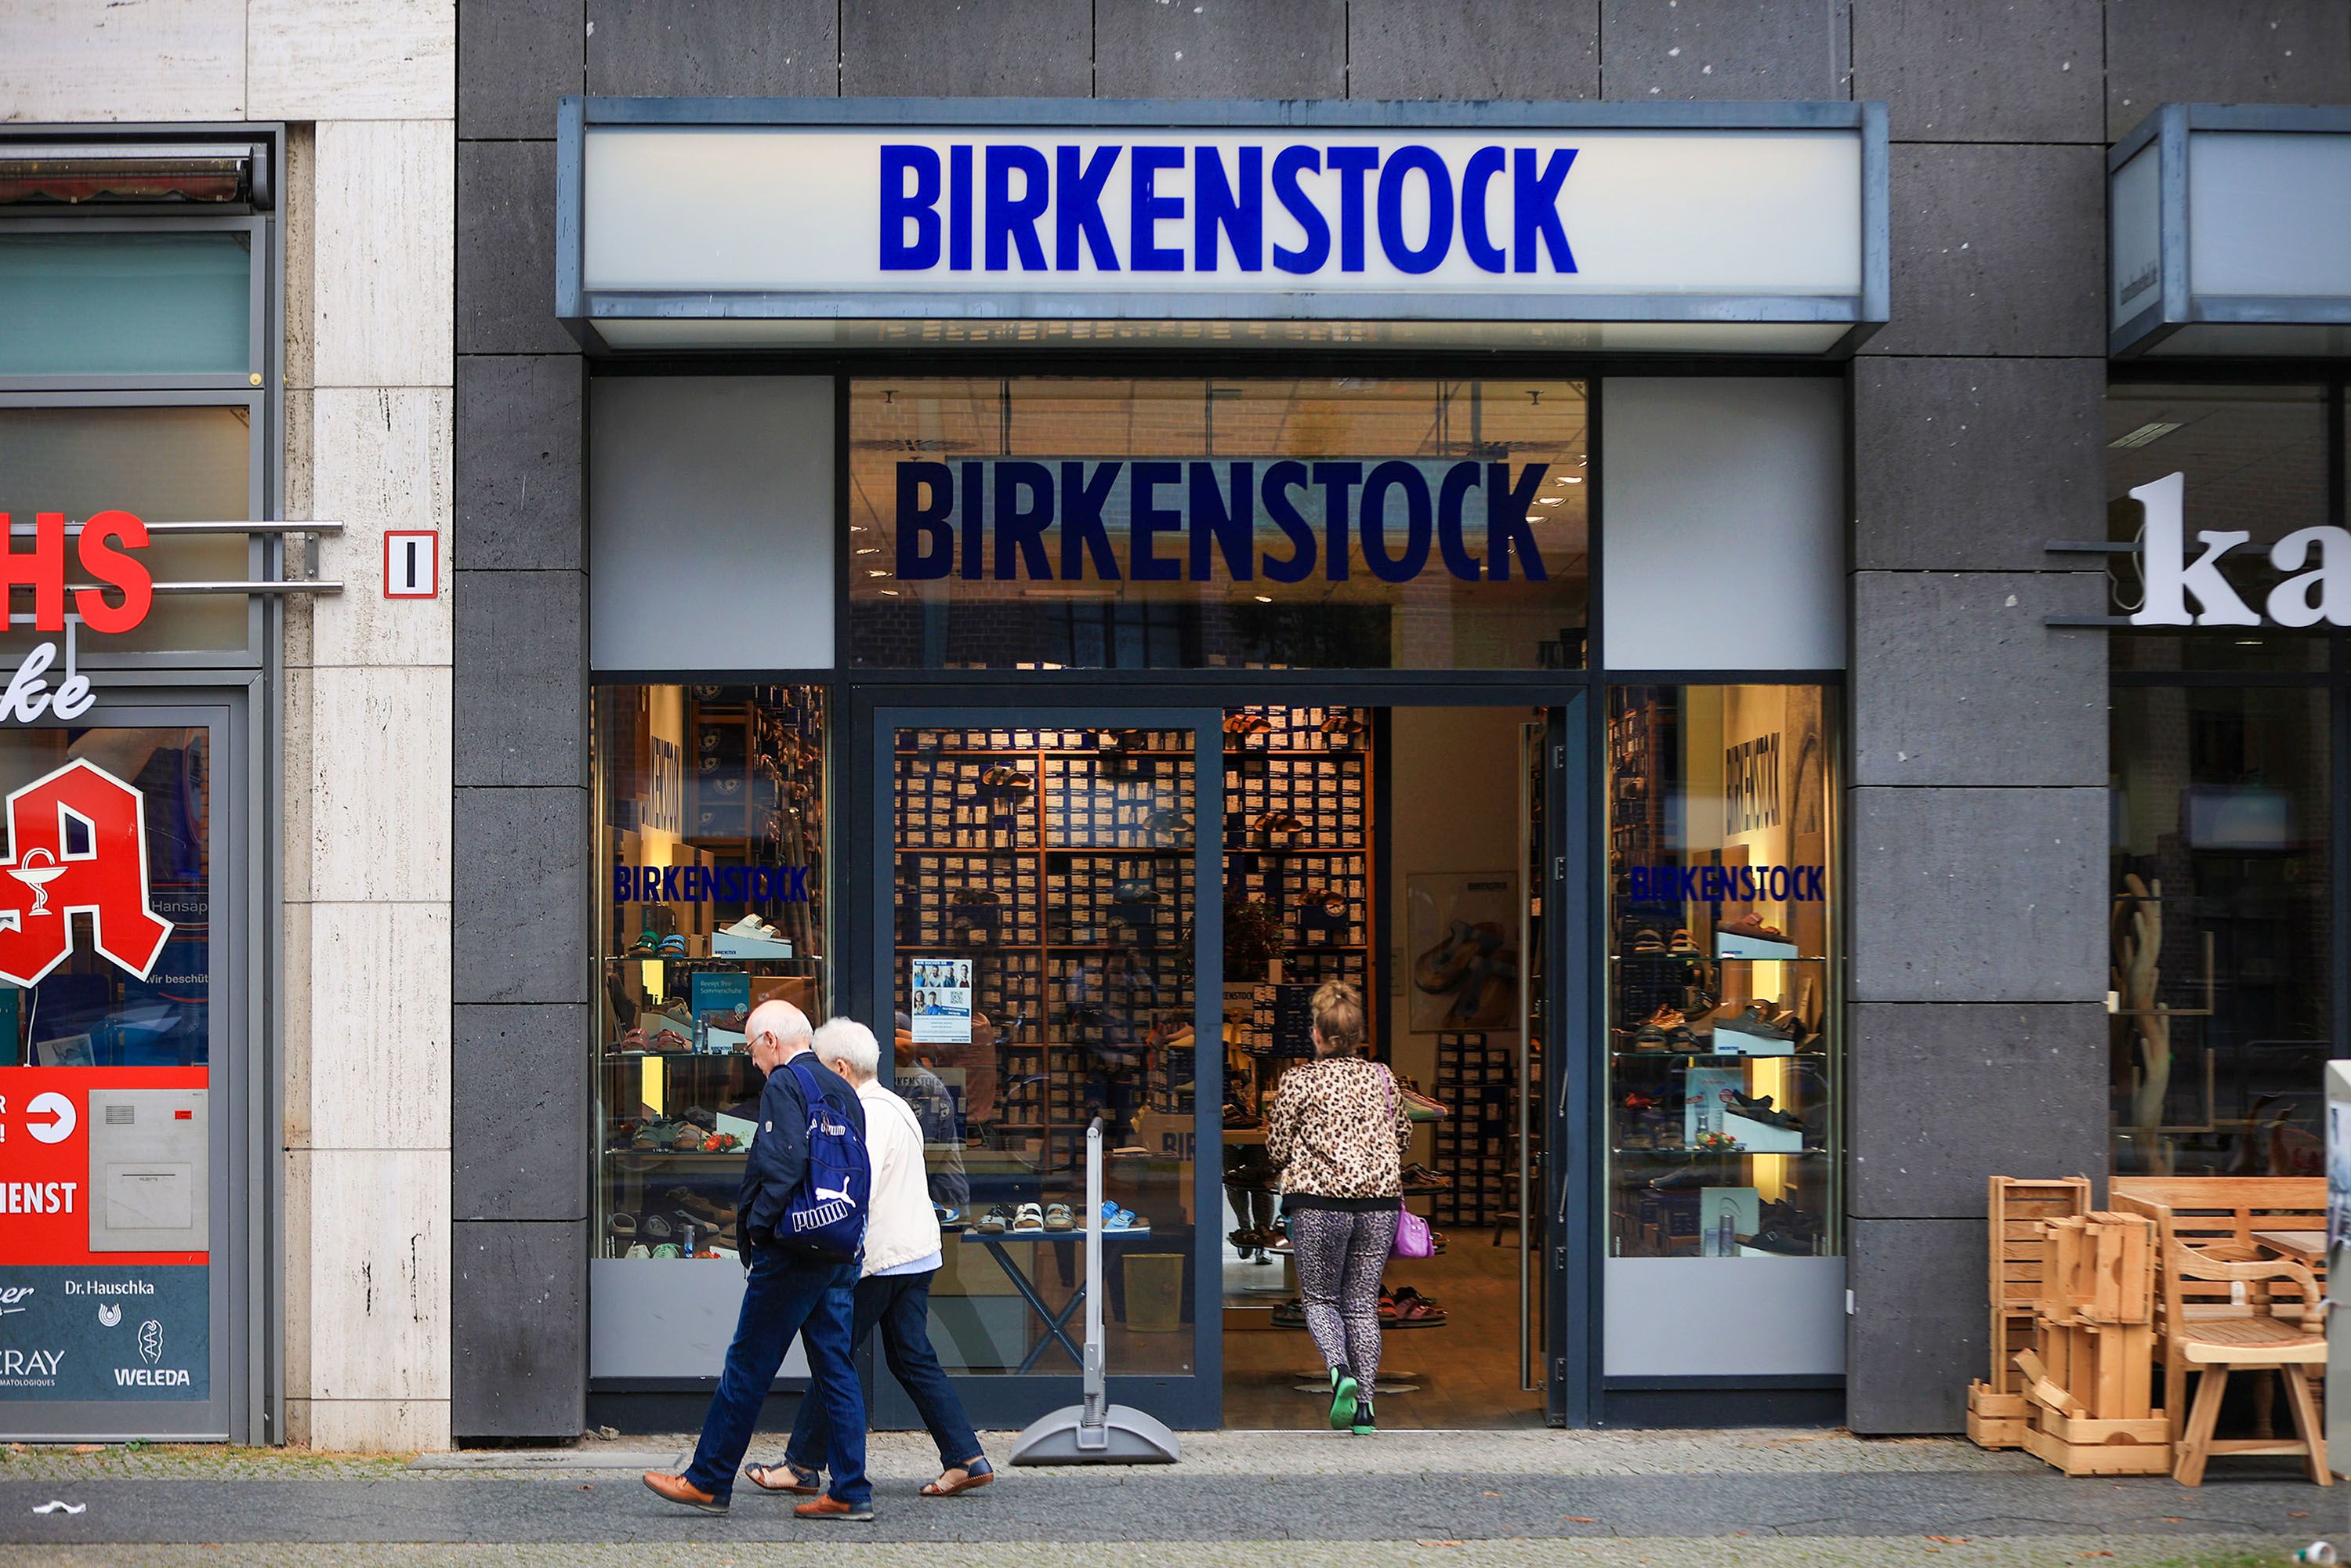 Birkenstock shoe store in Berlin Alexanderplatz - Germany Stock Photo